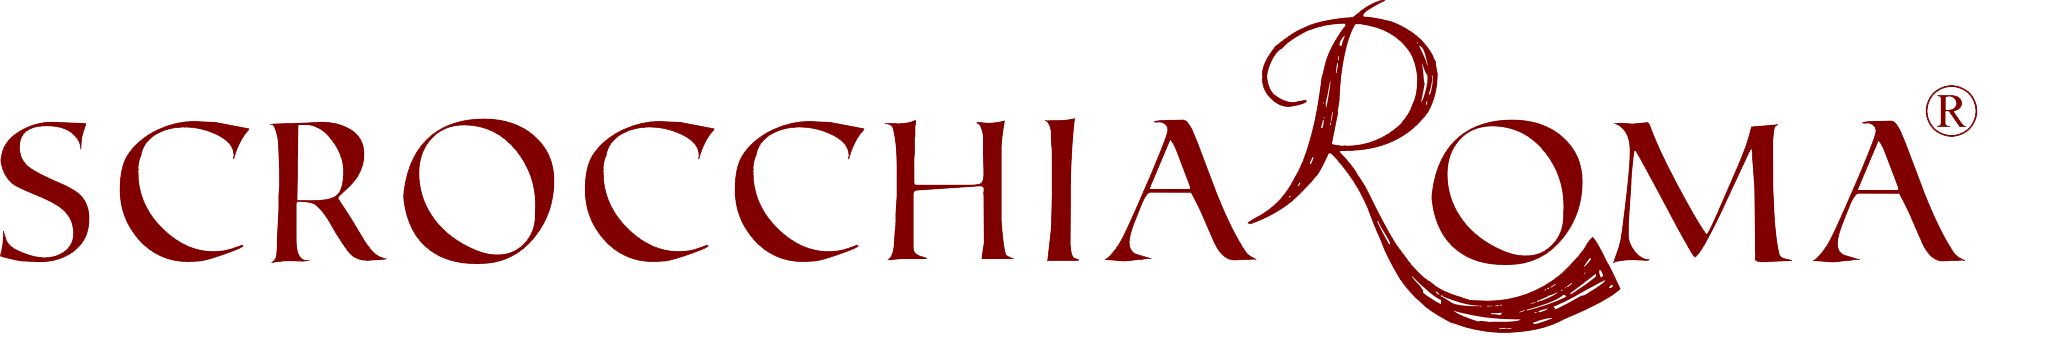 ScrocchiaRoma Logo